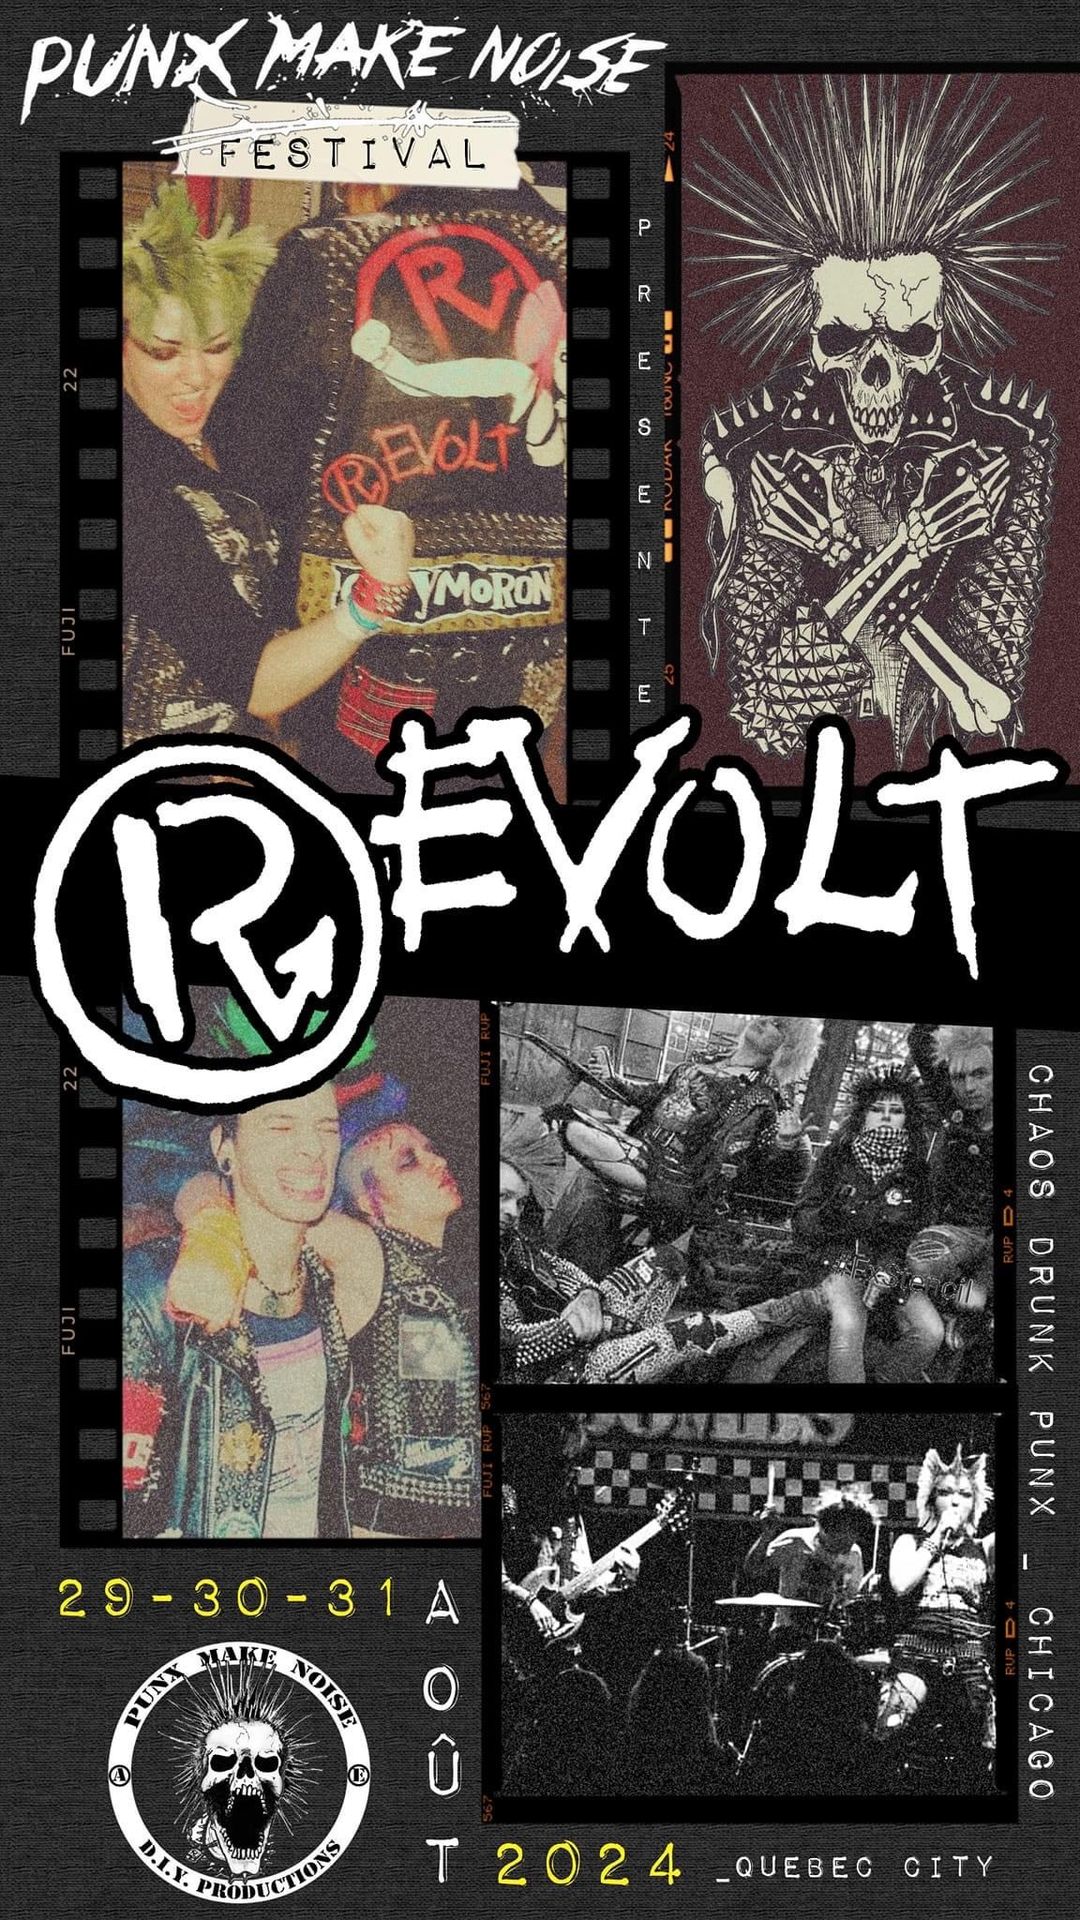 revolt punx make noise